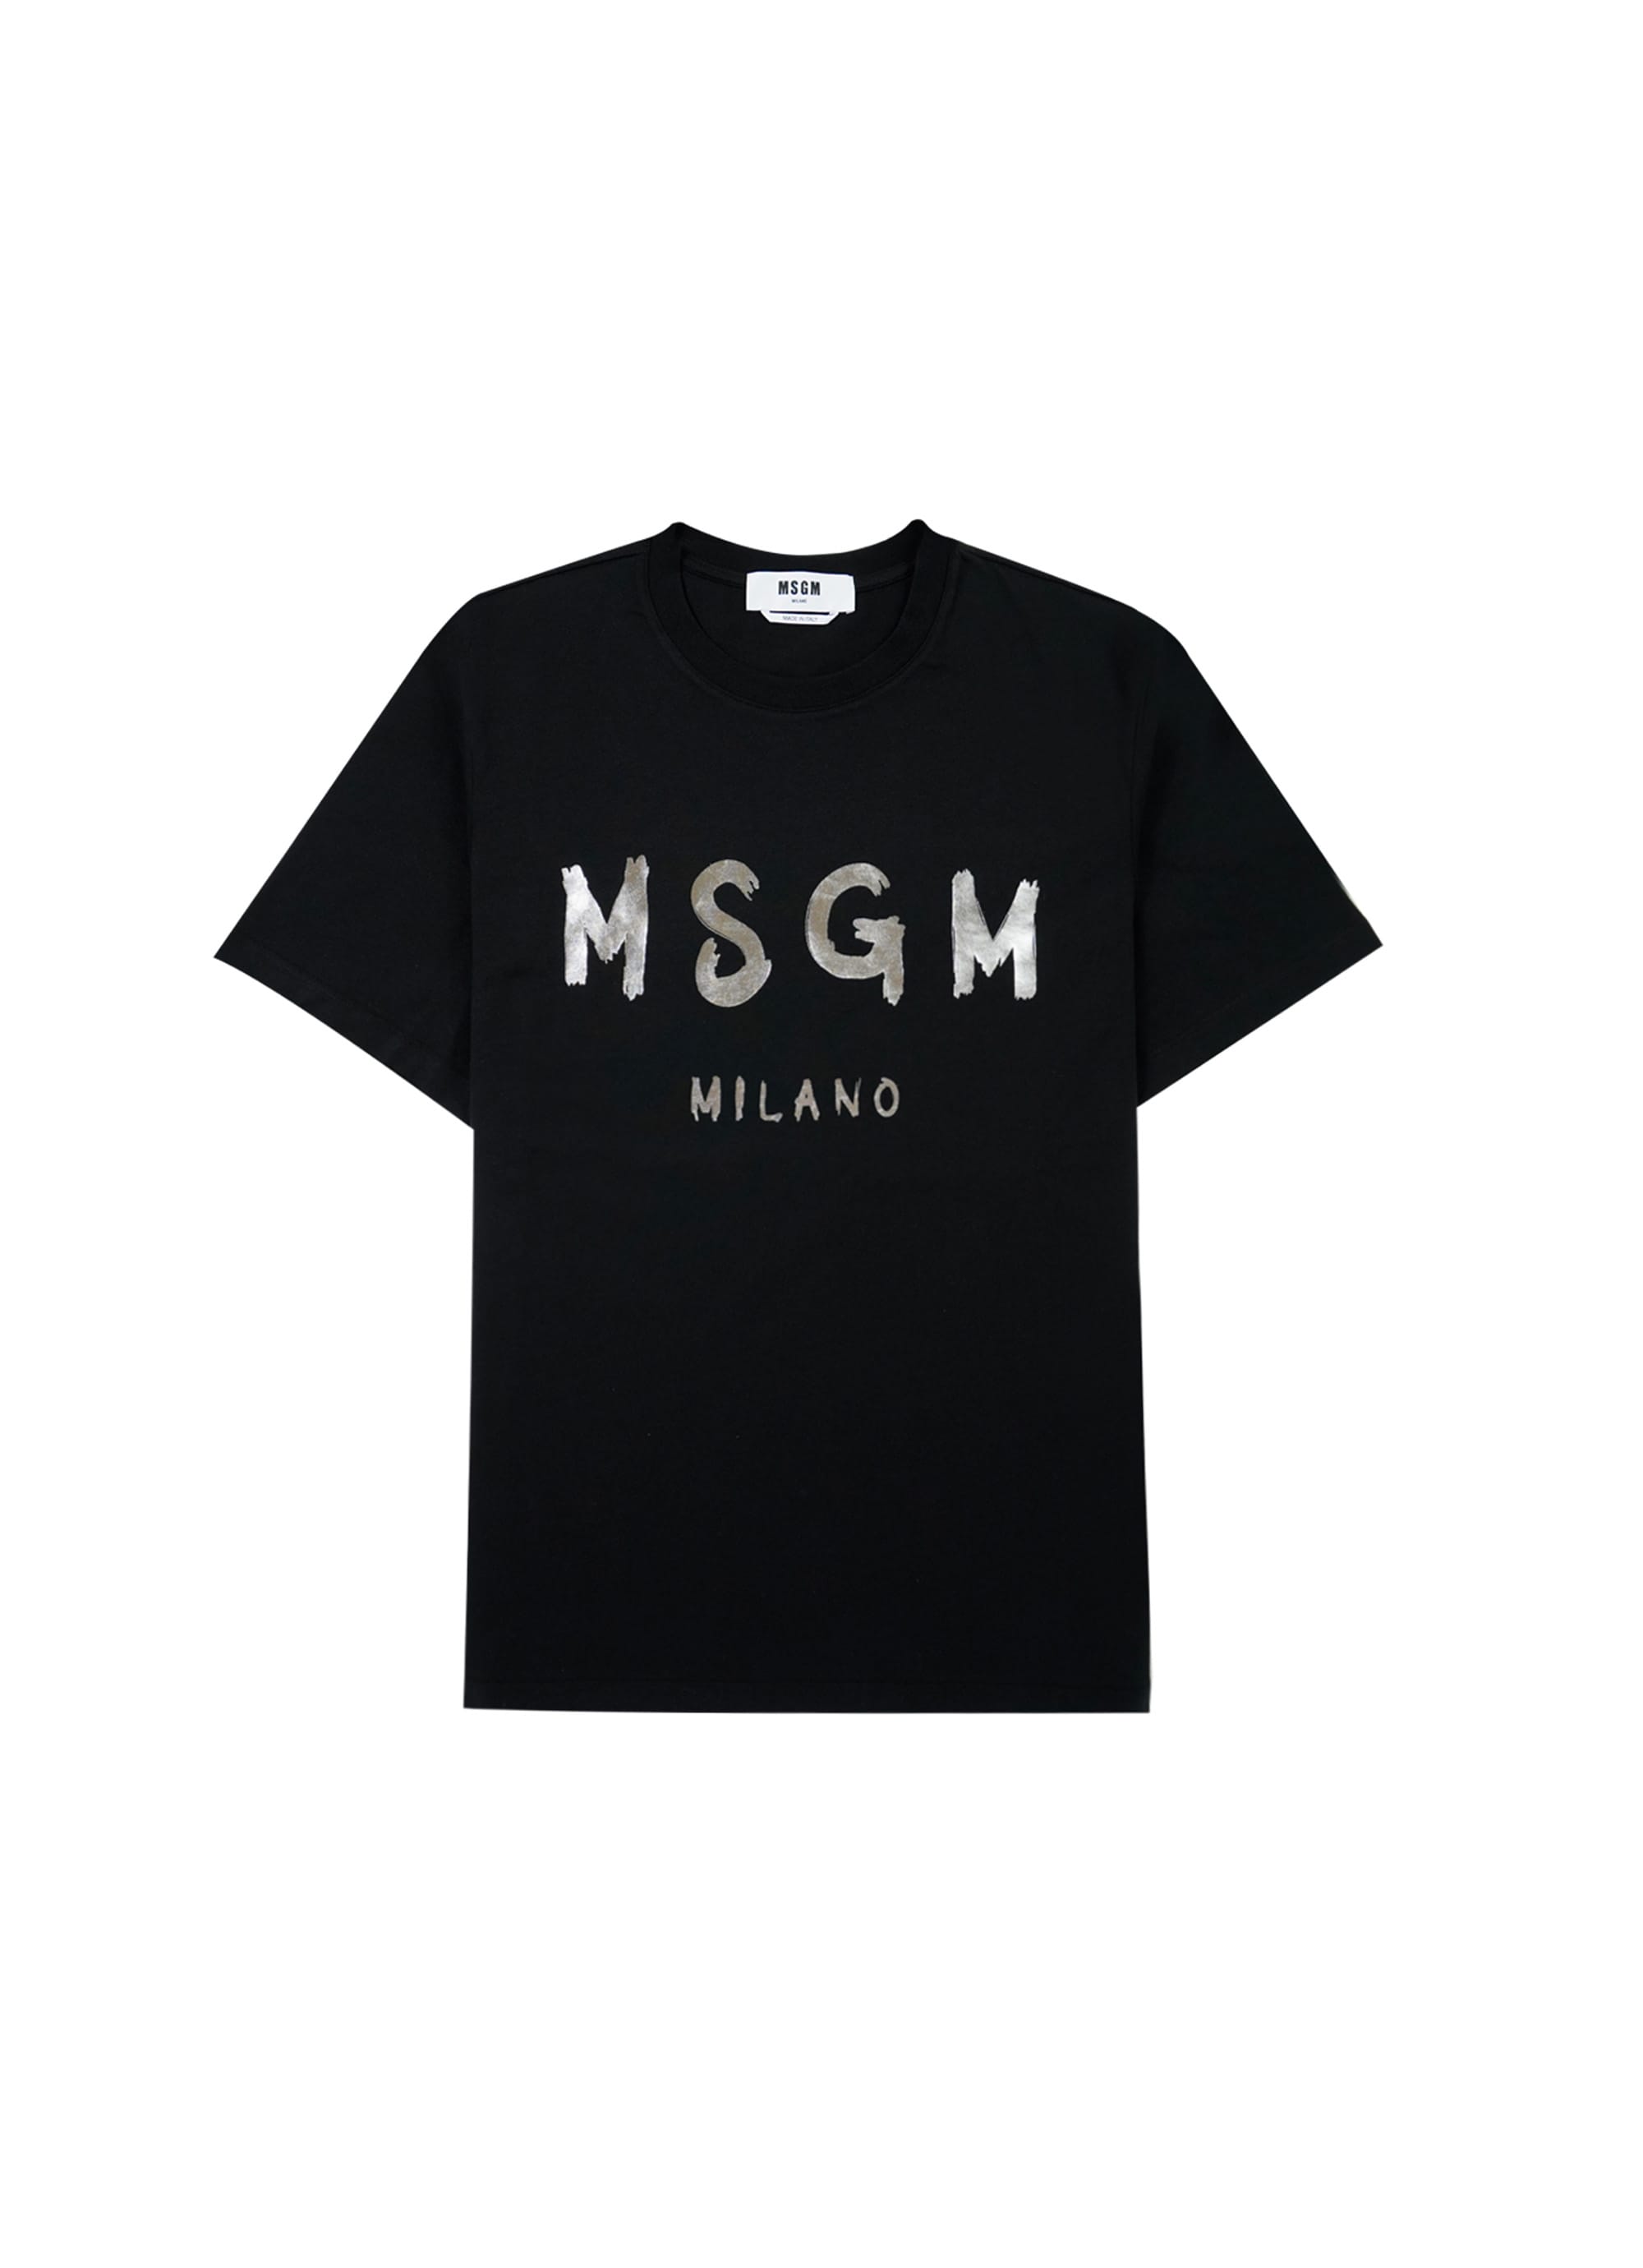 MSGM ブラッシュロゴ Tシャツ【Japan Exclusive/FOIL PRINT】 詳細画像 ブラック×シルバー 1